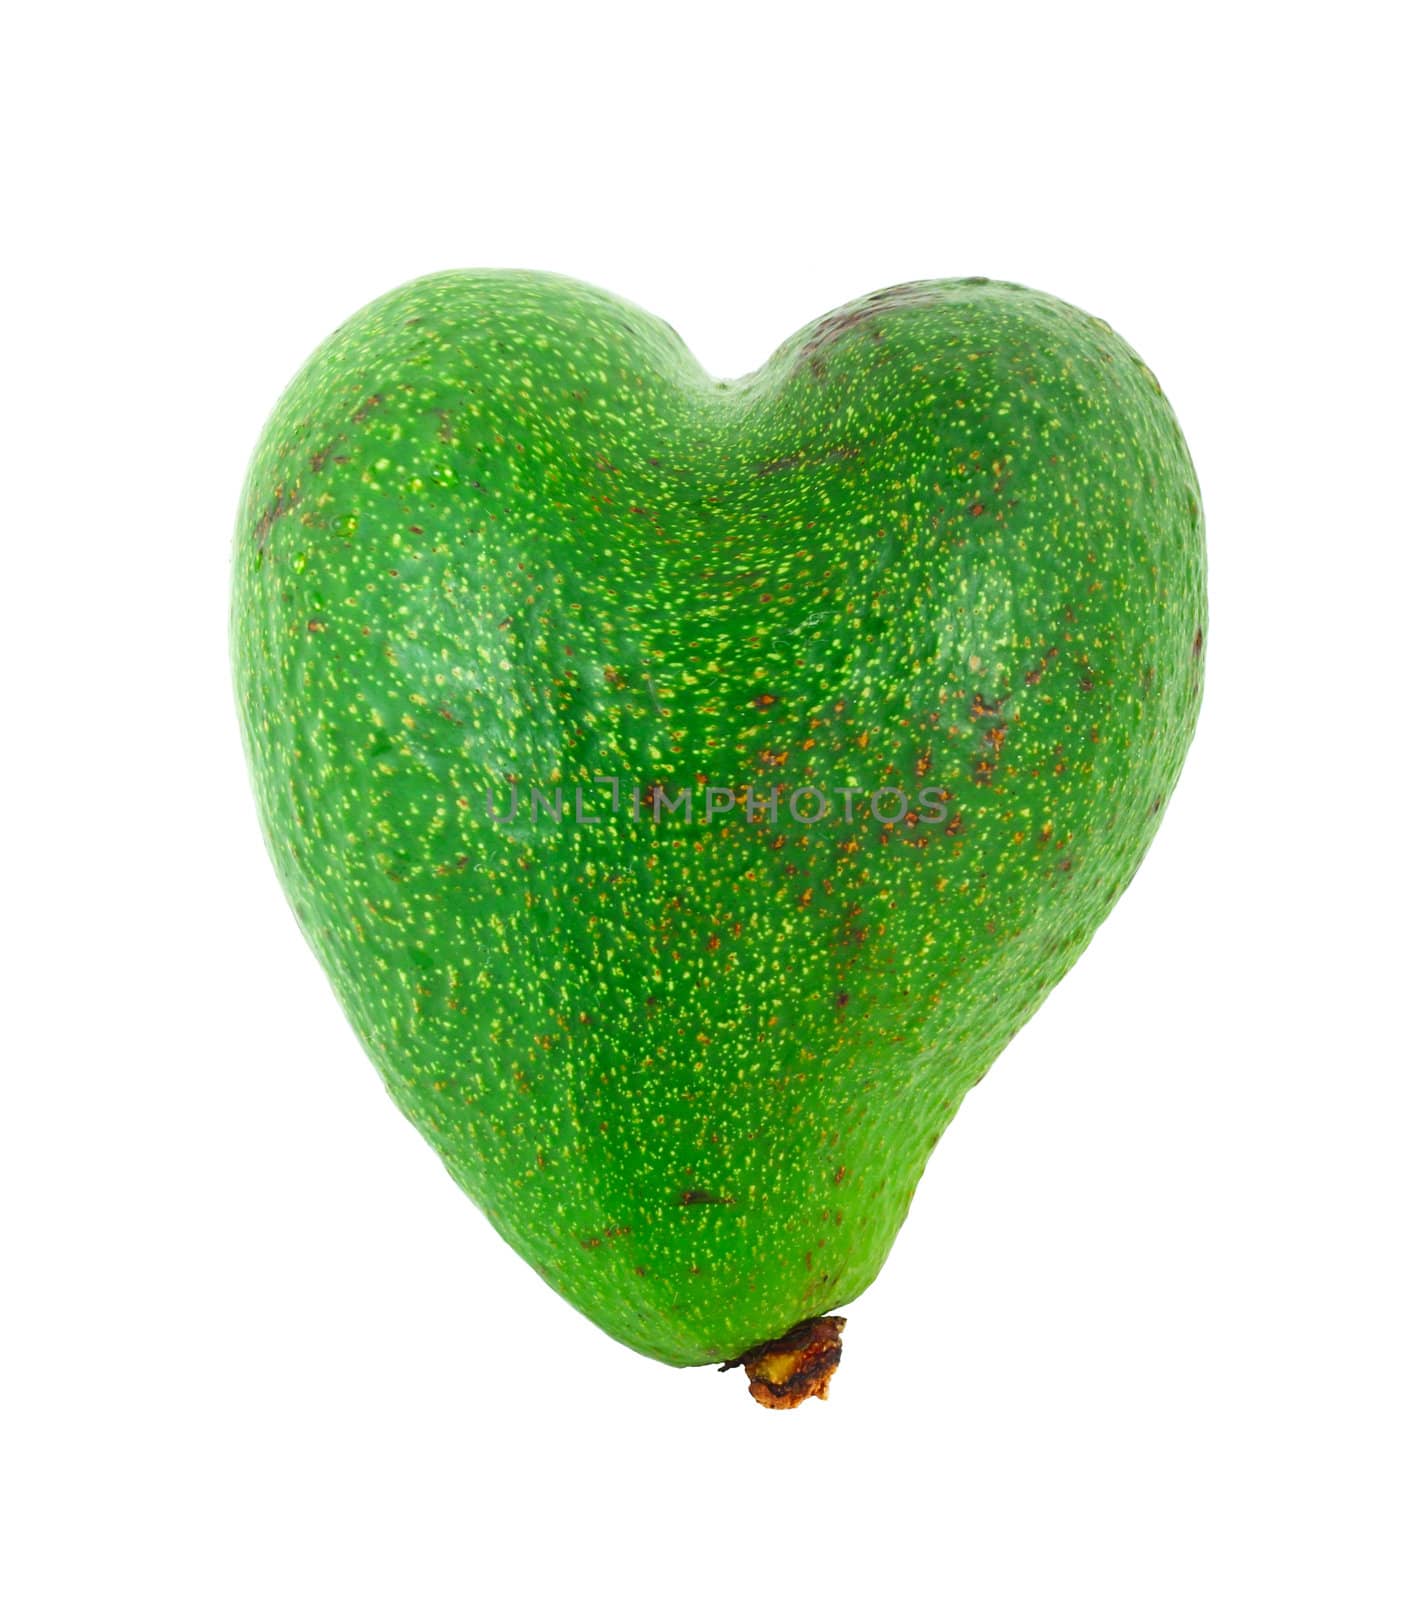 Avocado shaped like heart by destillat